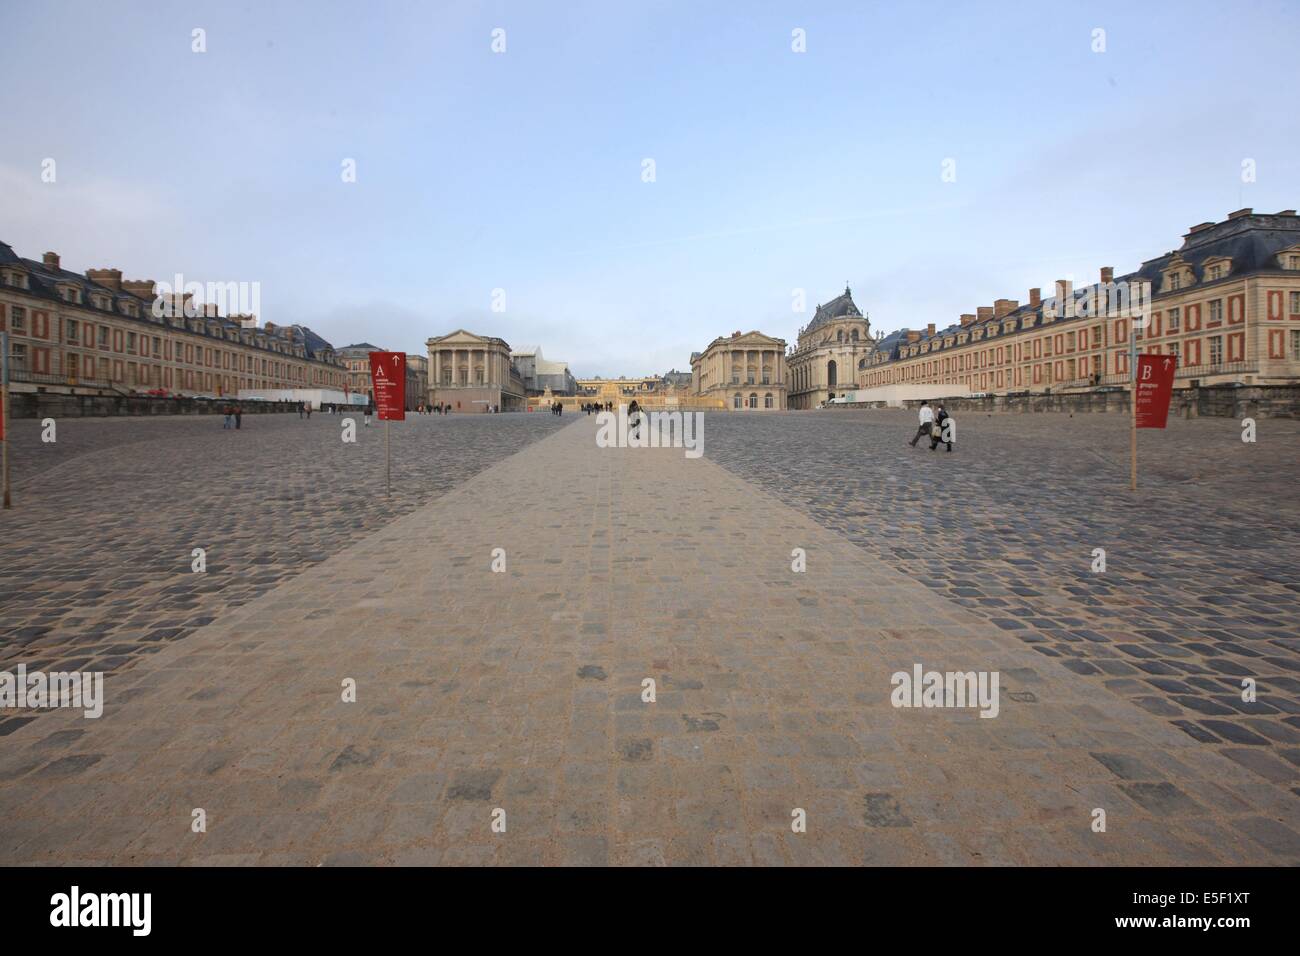 France, Ile de France, Yvelines, Versailles, chateau de Versailles, cour d'honneur, paves, Stock Photo